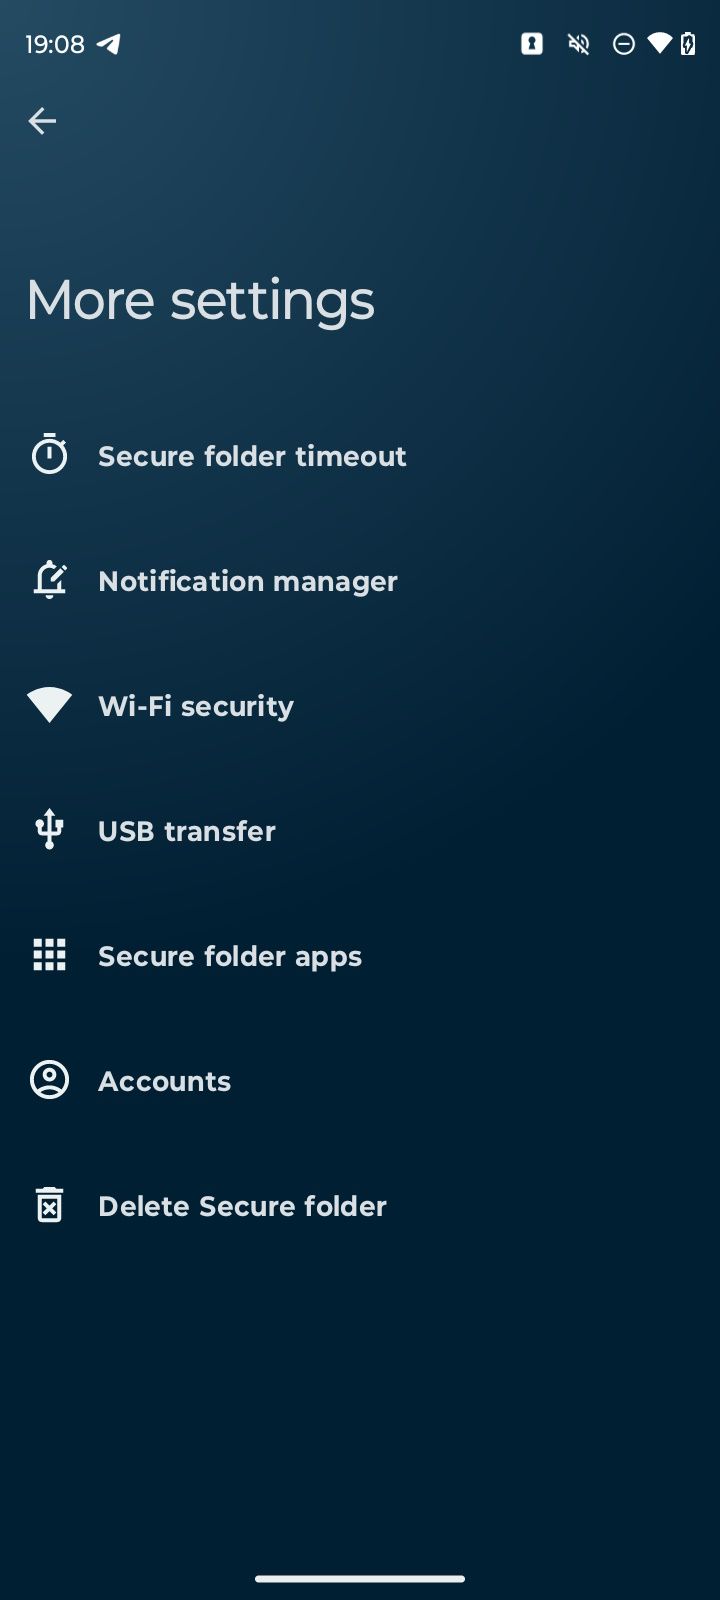 Uma lista de opções na tela de mais configurações no aplicativo Moto Secure